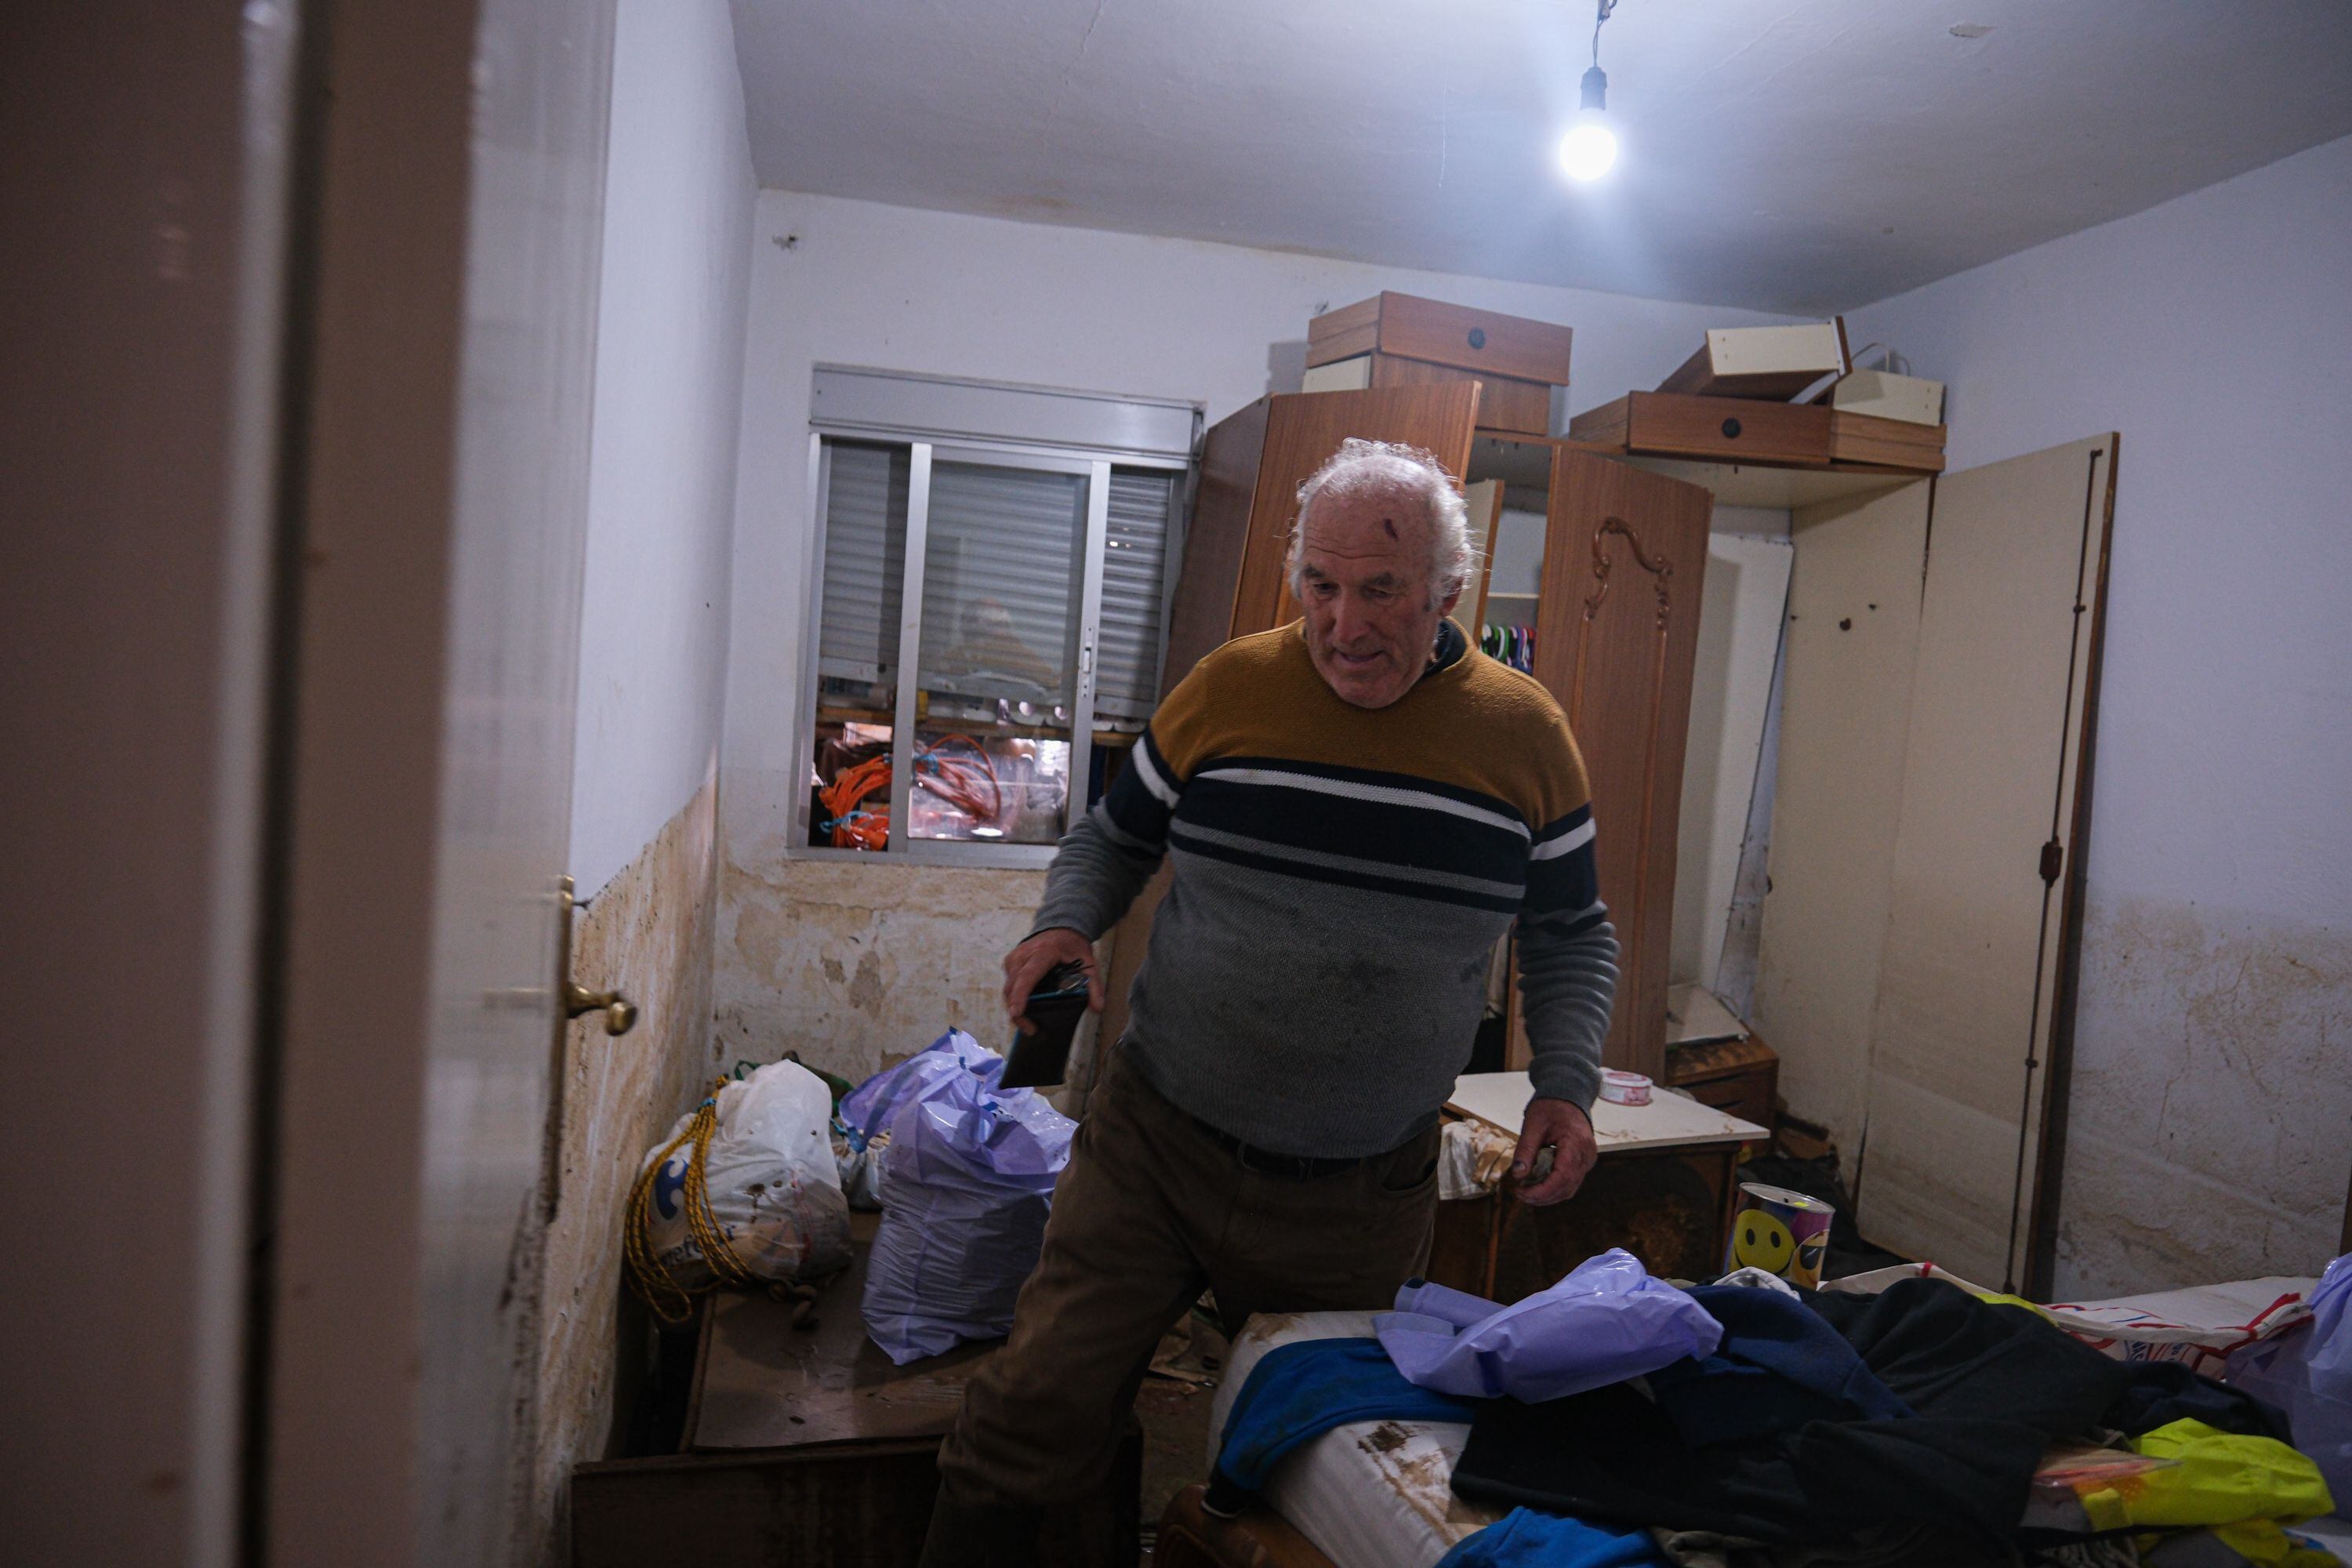 Justo Sáchez Abad, vecino de la localidad pacense afectada, camina por su dormitorio sorteando el barro y sus pertenencias. Justo fue rescatado del tejado de su casa de Valdebótoa por una barca de protección civil.